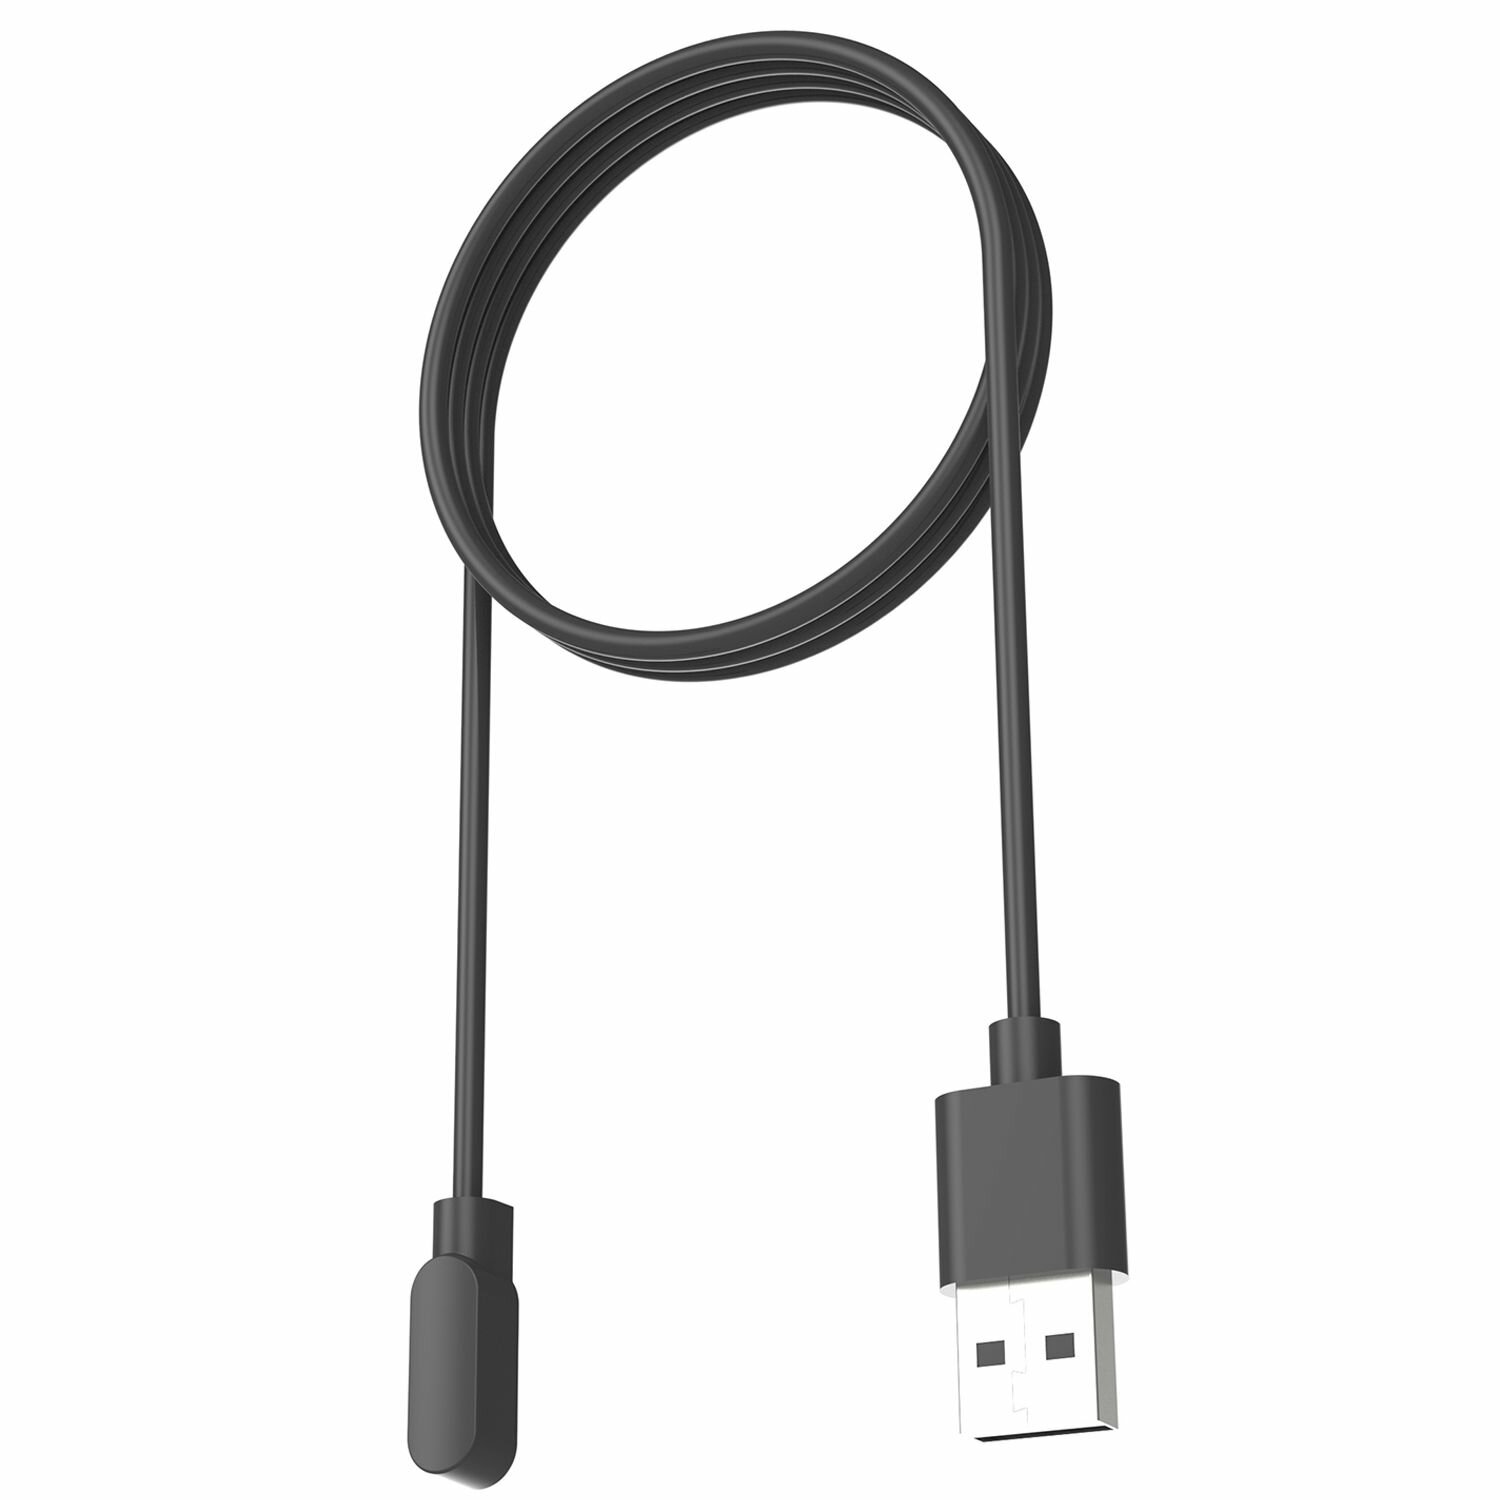 Зарядное USB устройство 1м для Realme TechLife Dizo Watch R / DW2120